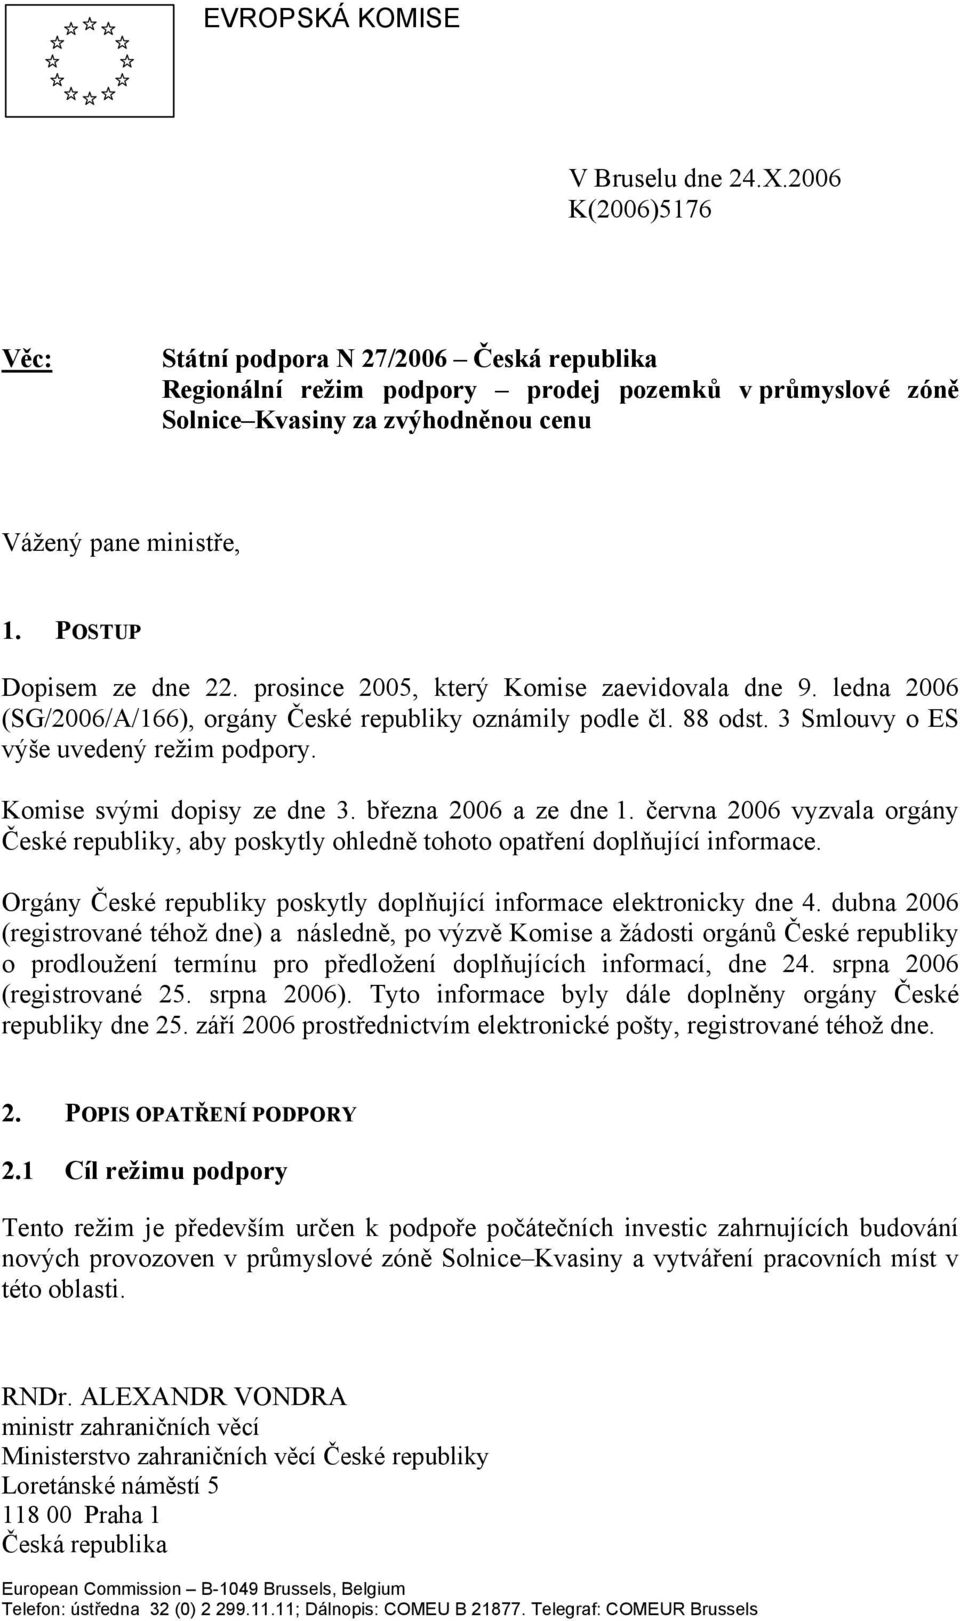 POSTUP Dopisem ze dne 22. prosince 2005, který Komise zaevidovala dne 9. ledna 2006 (SG/2006/A/166), orgány České republiky oznámily podle čl. 88 odst. 3 Smlouvy o ES výše uvedený režim podpory.